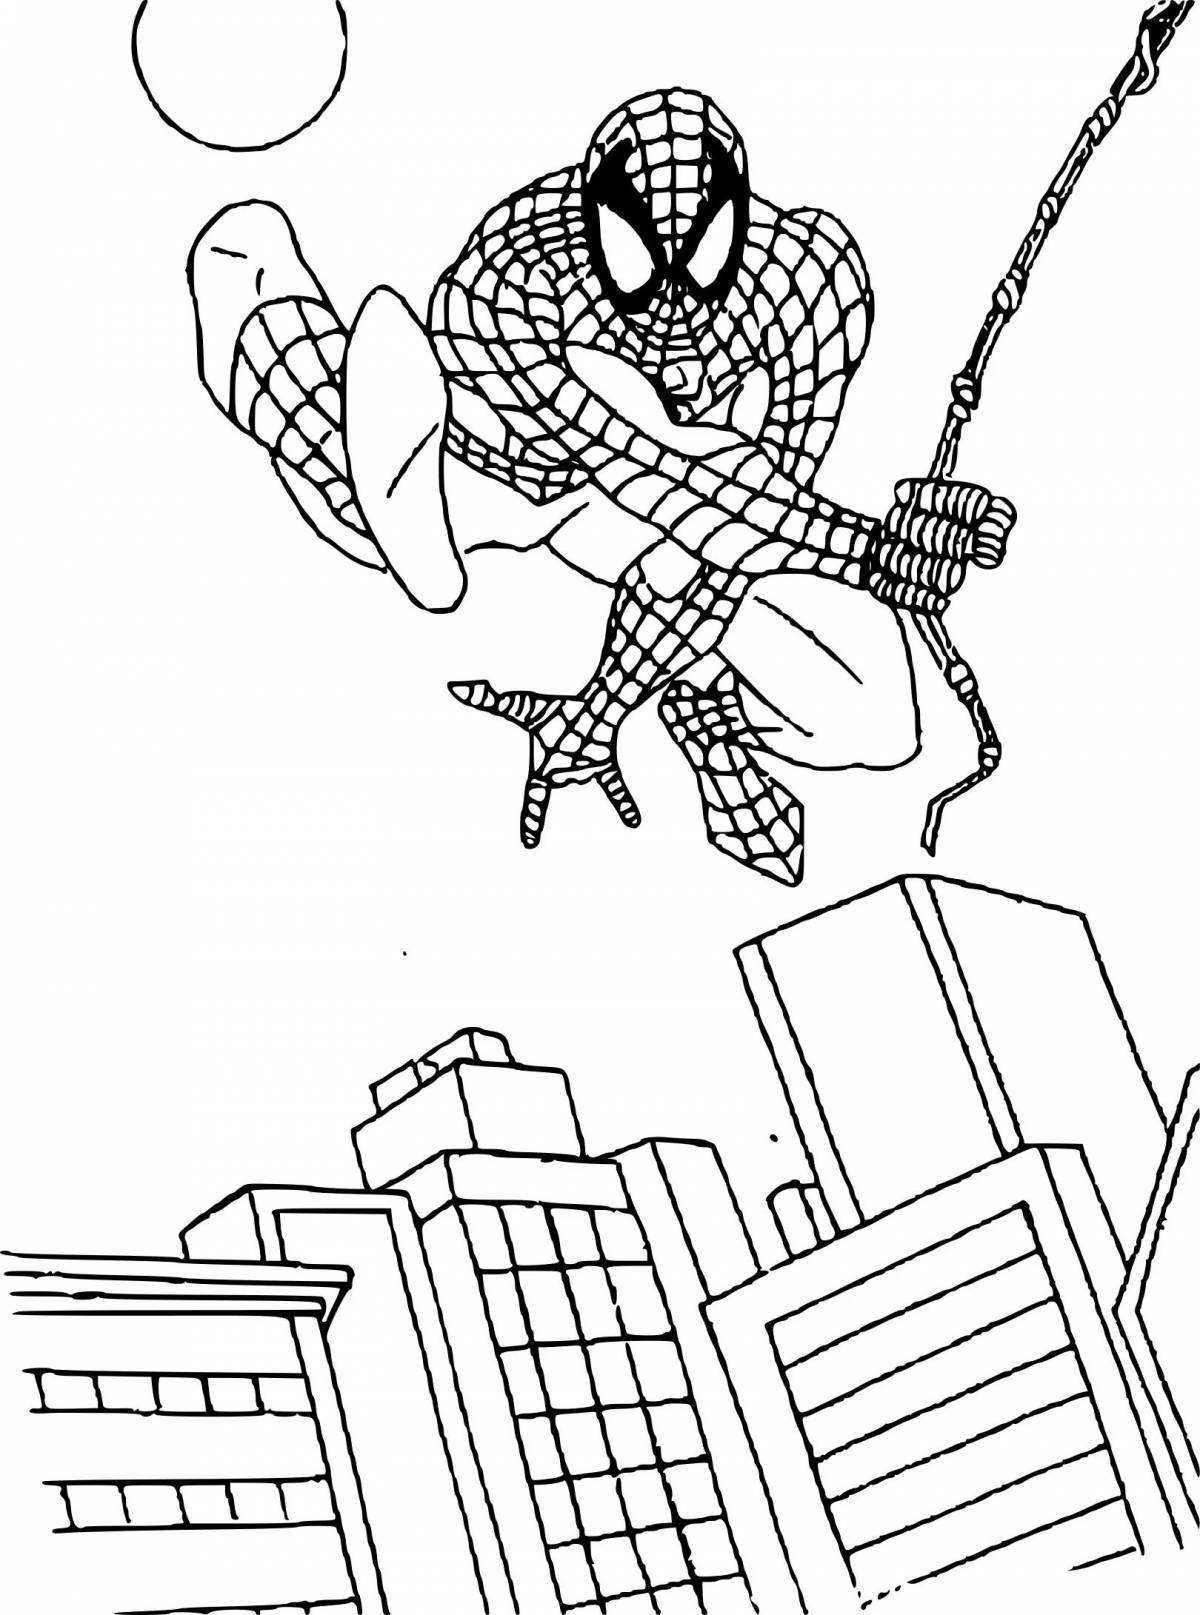 Comic comic Spiderman coloring book